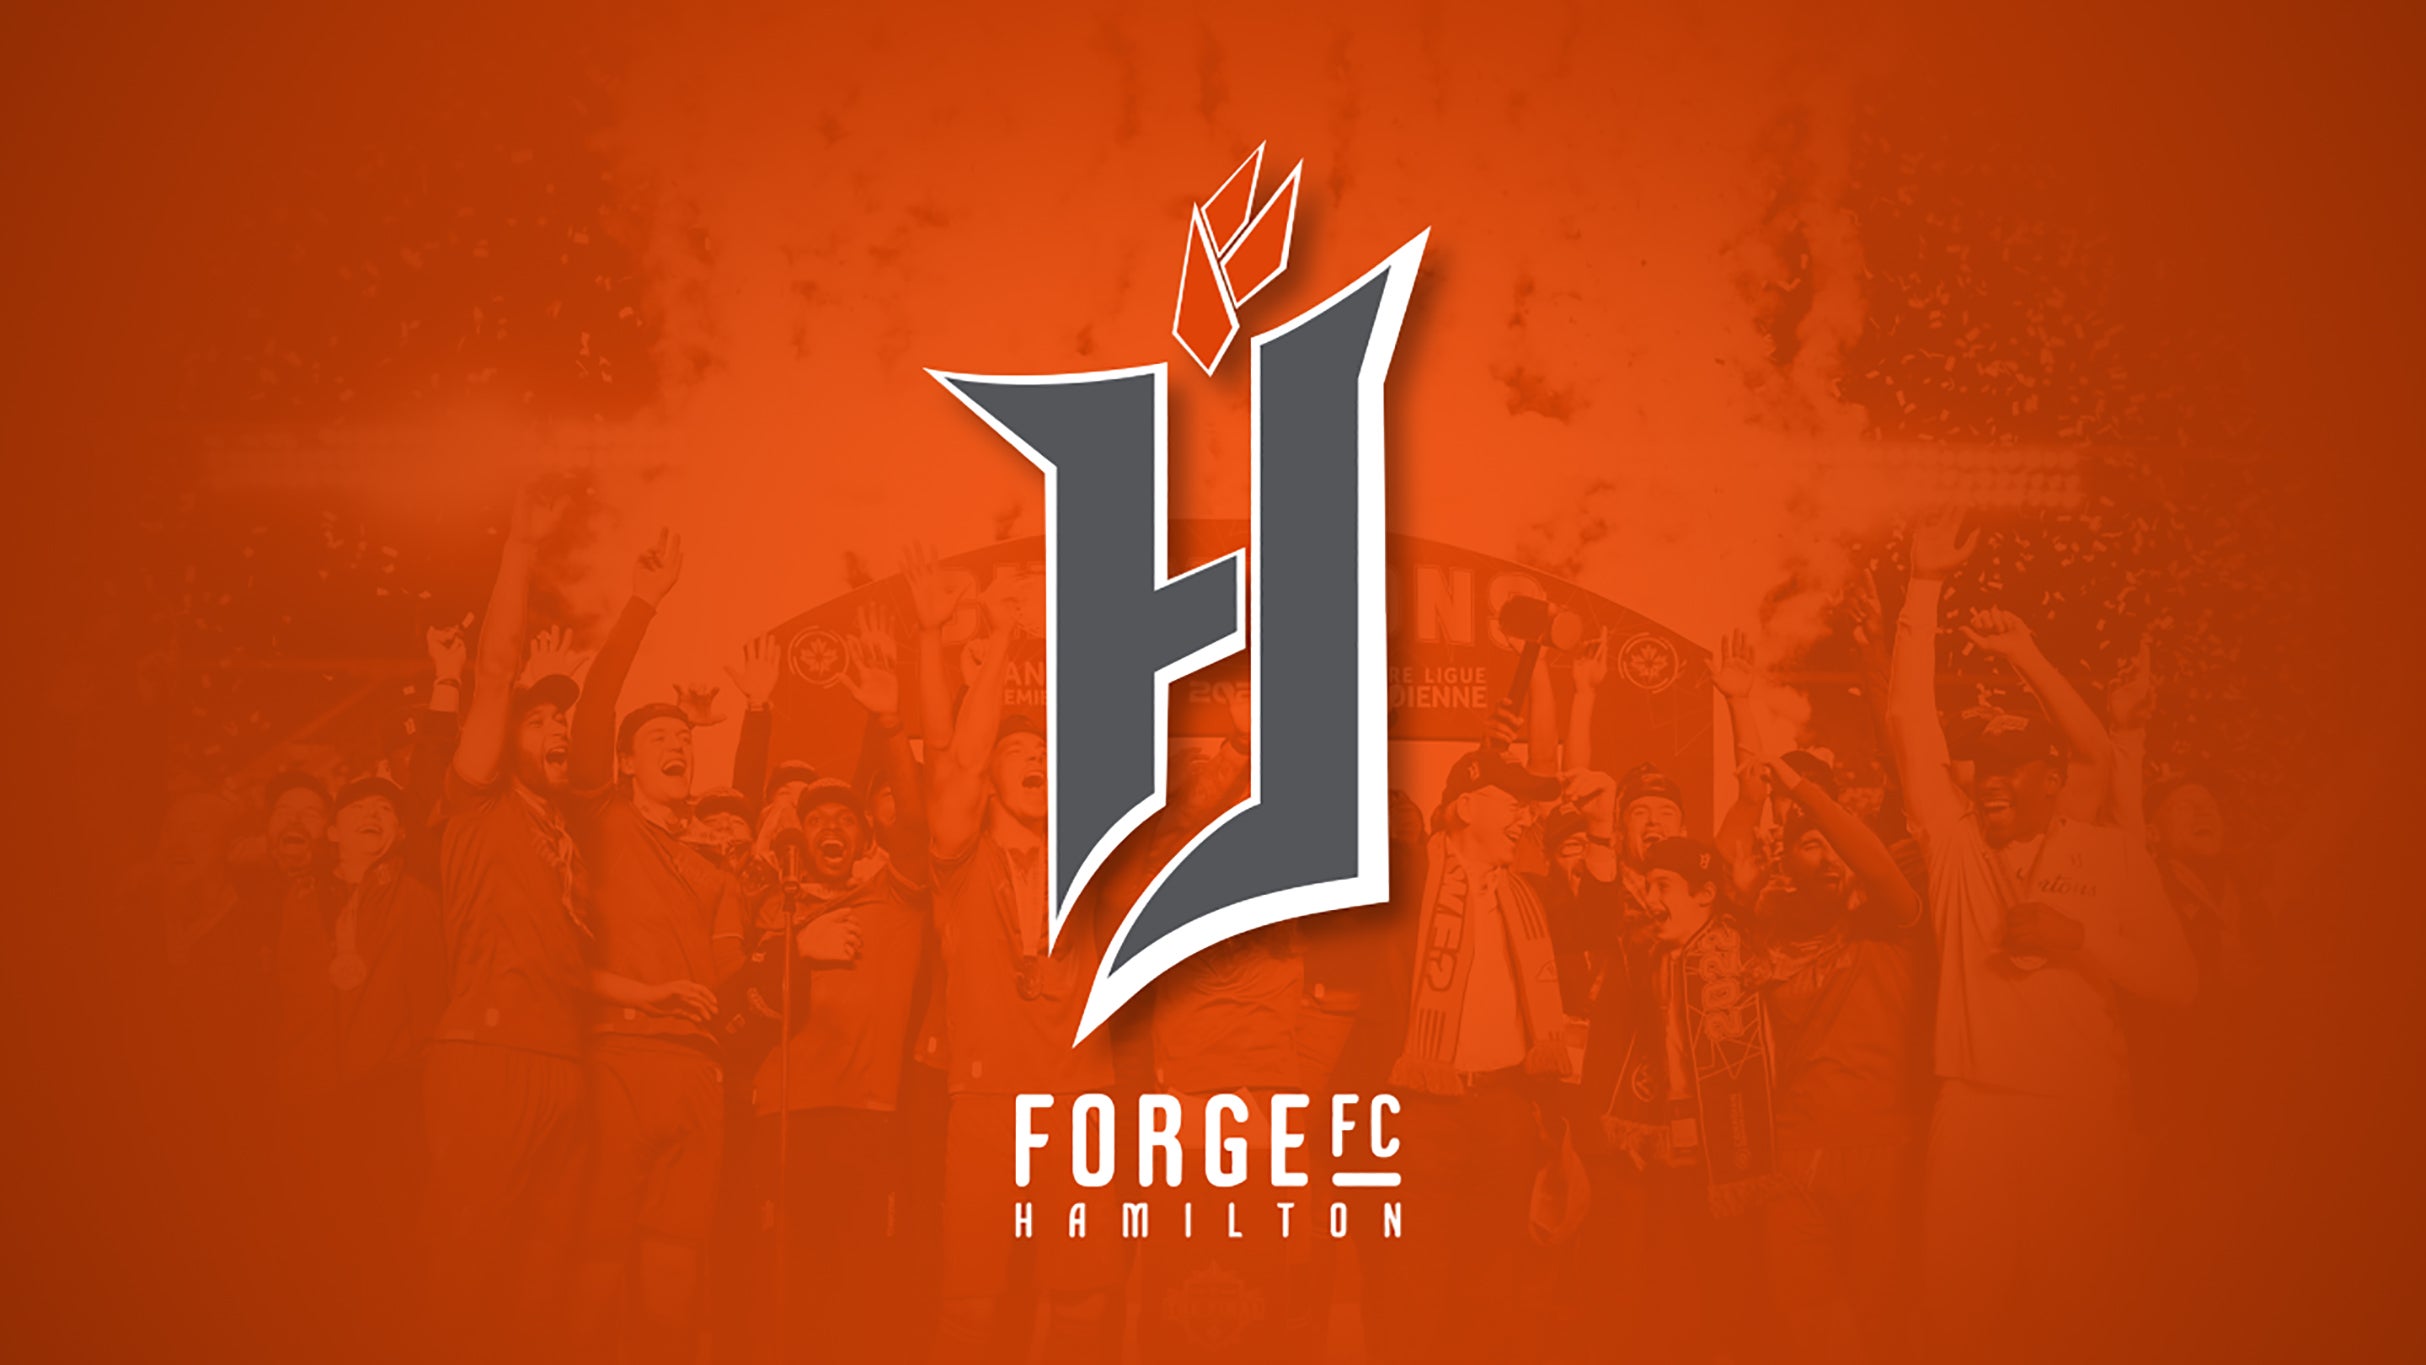 Forge FC vs. HFX Wanderers FC presale information on freepresalepasswords.com